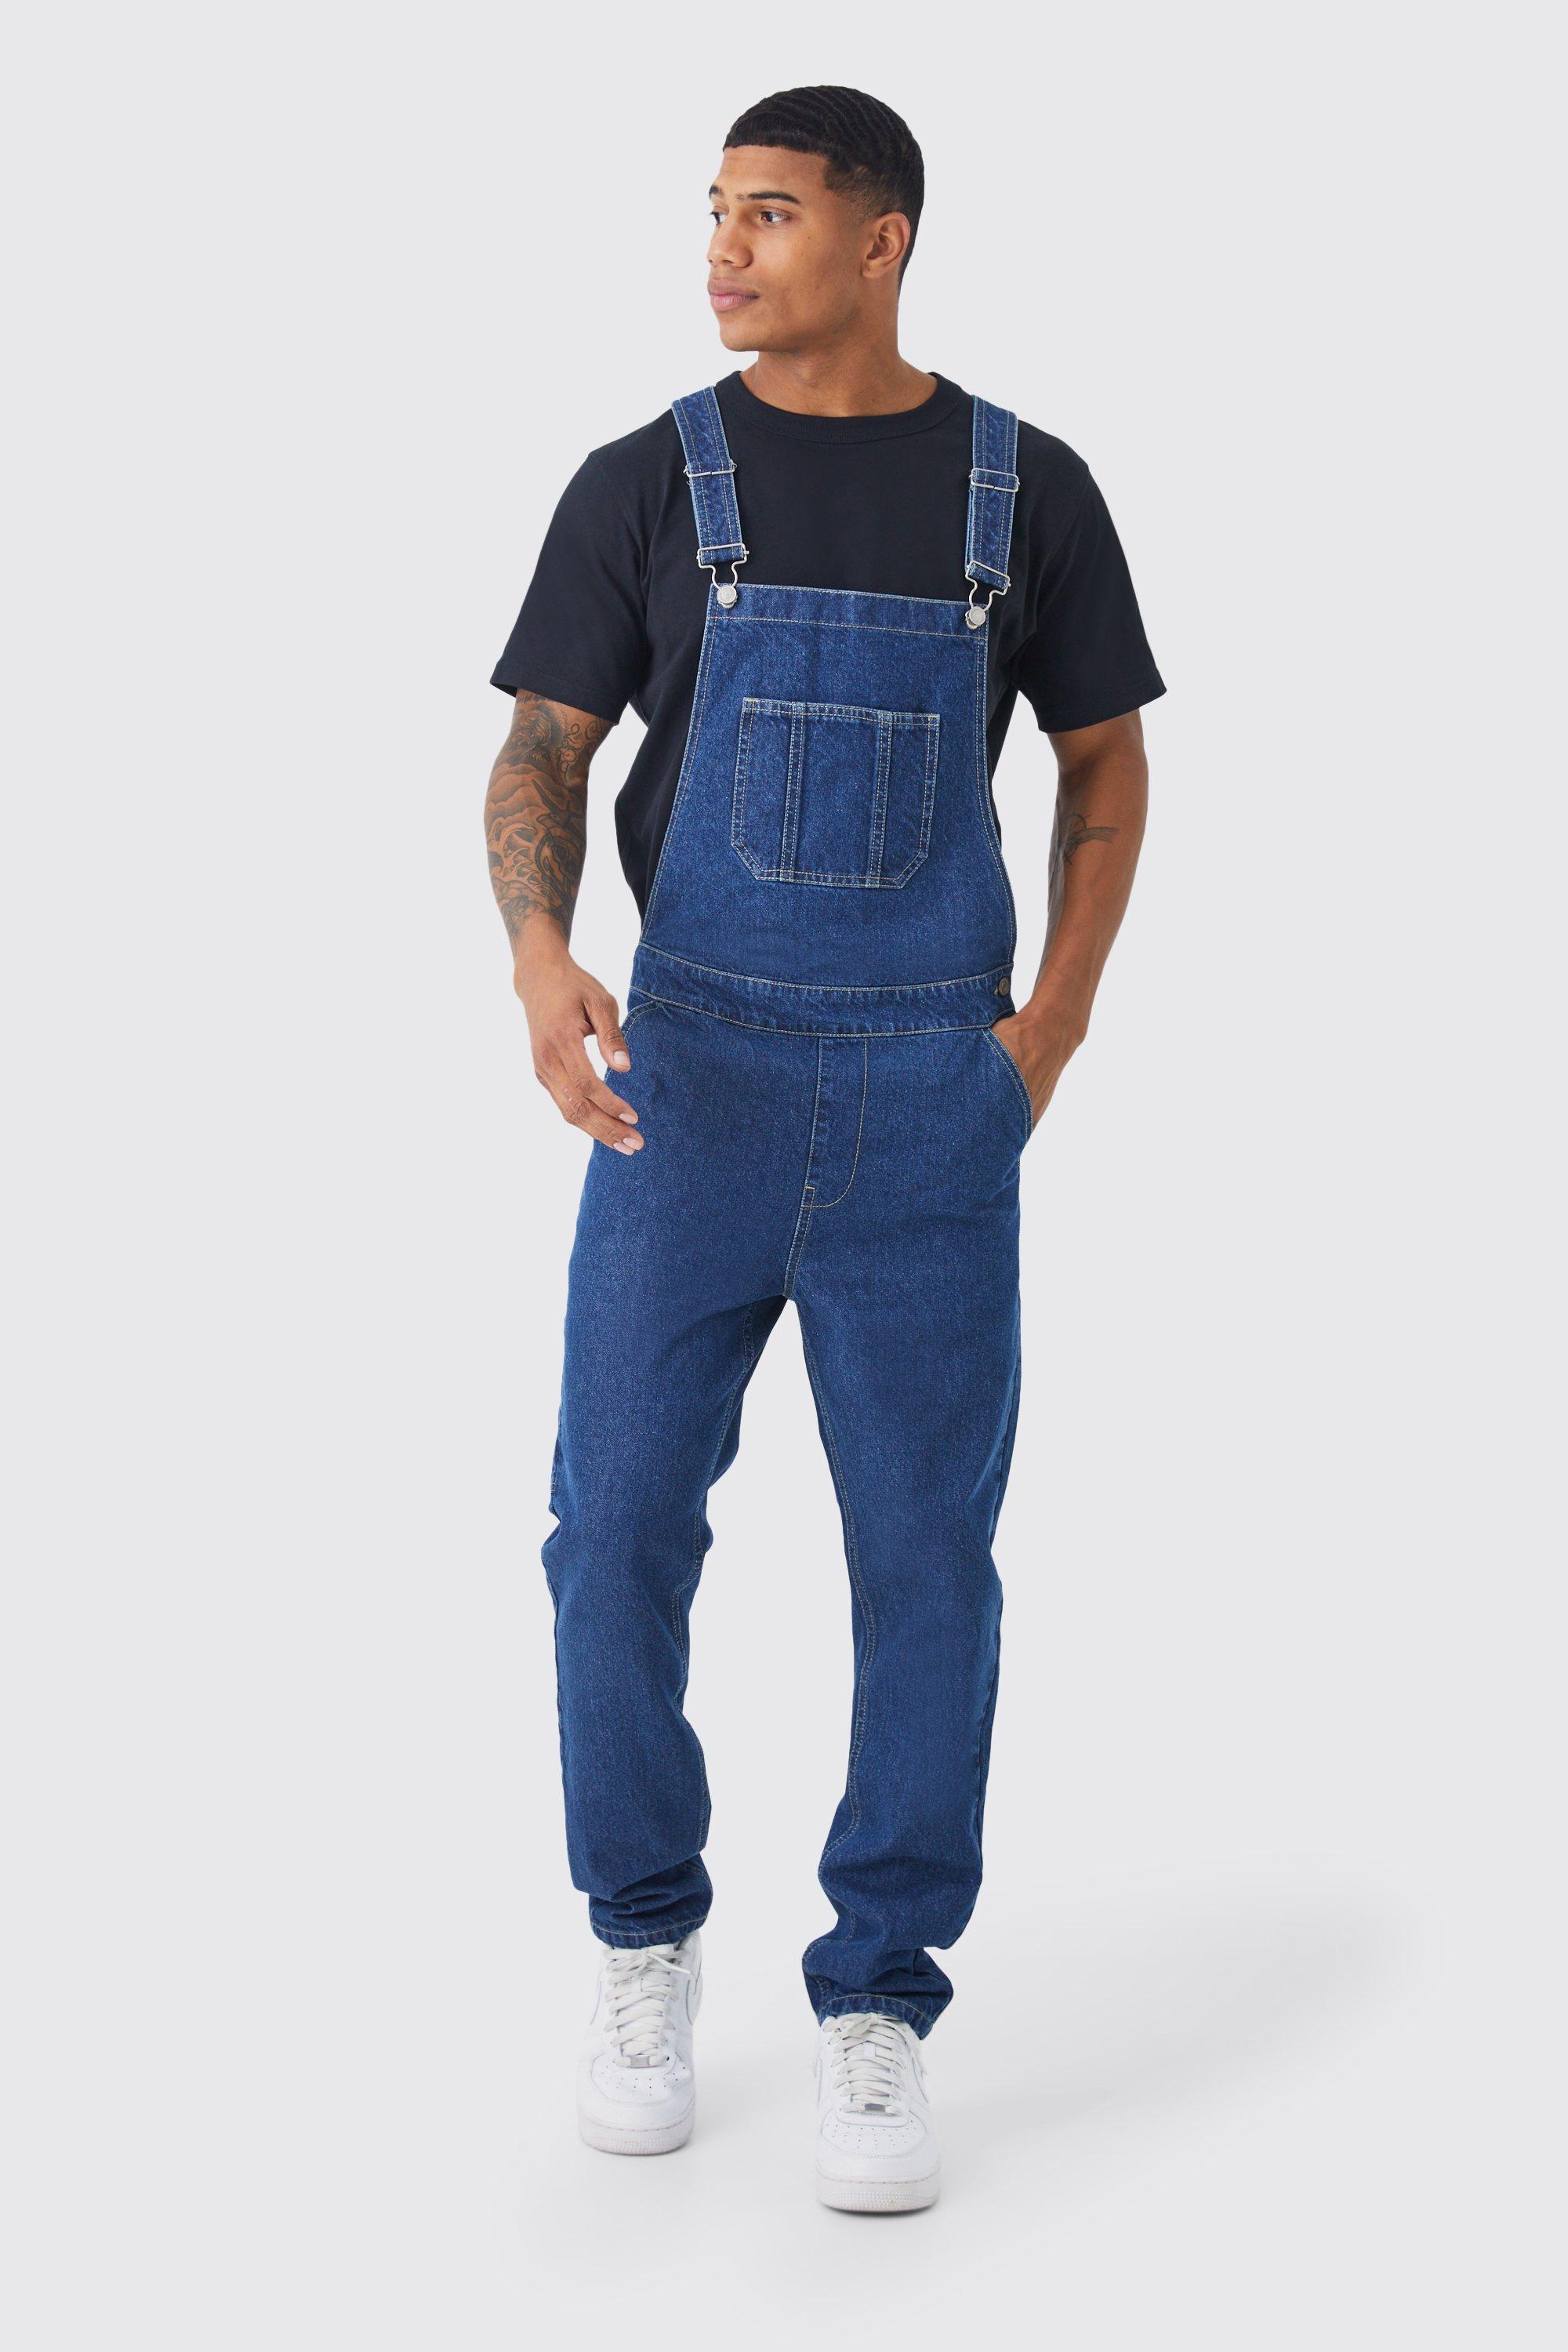 Men’s Vintage Pants, Trousers, Jeans, Overalls Mens Full Length Denim Dungarees - Blue - M $70.00 AT vintagedancer.com